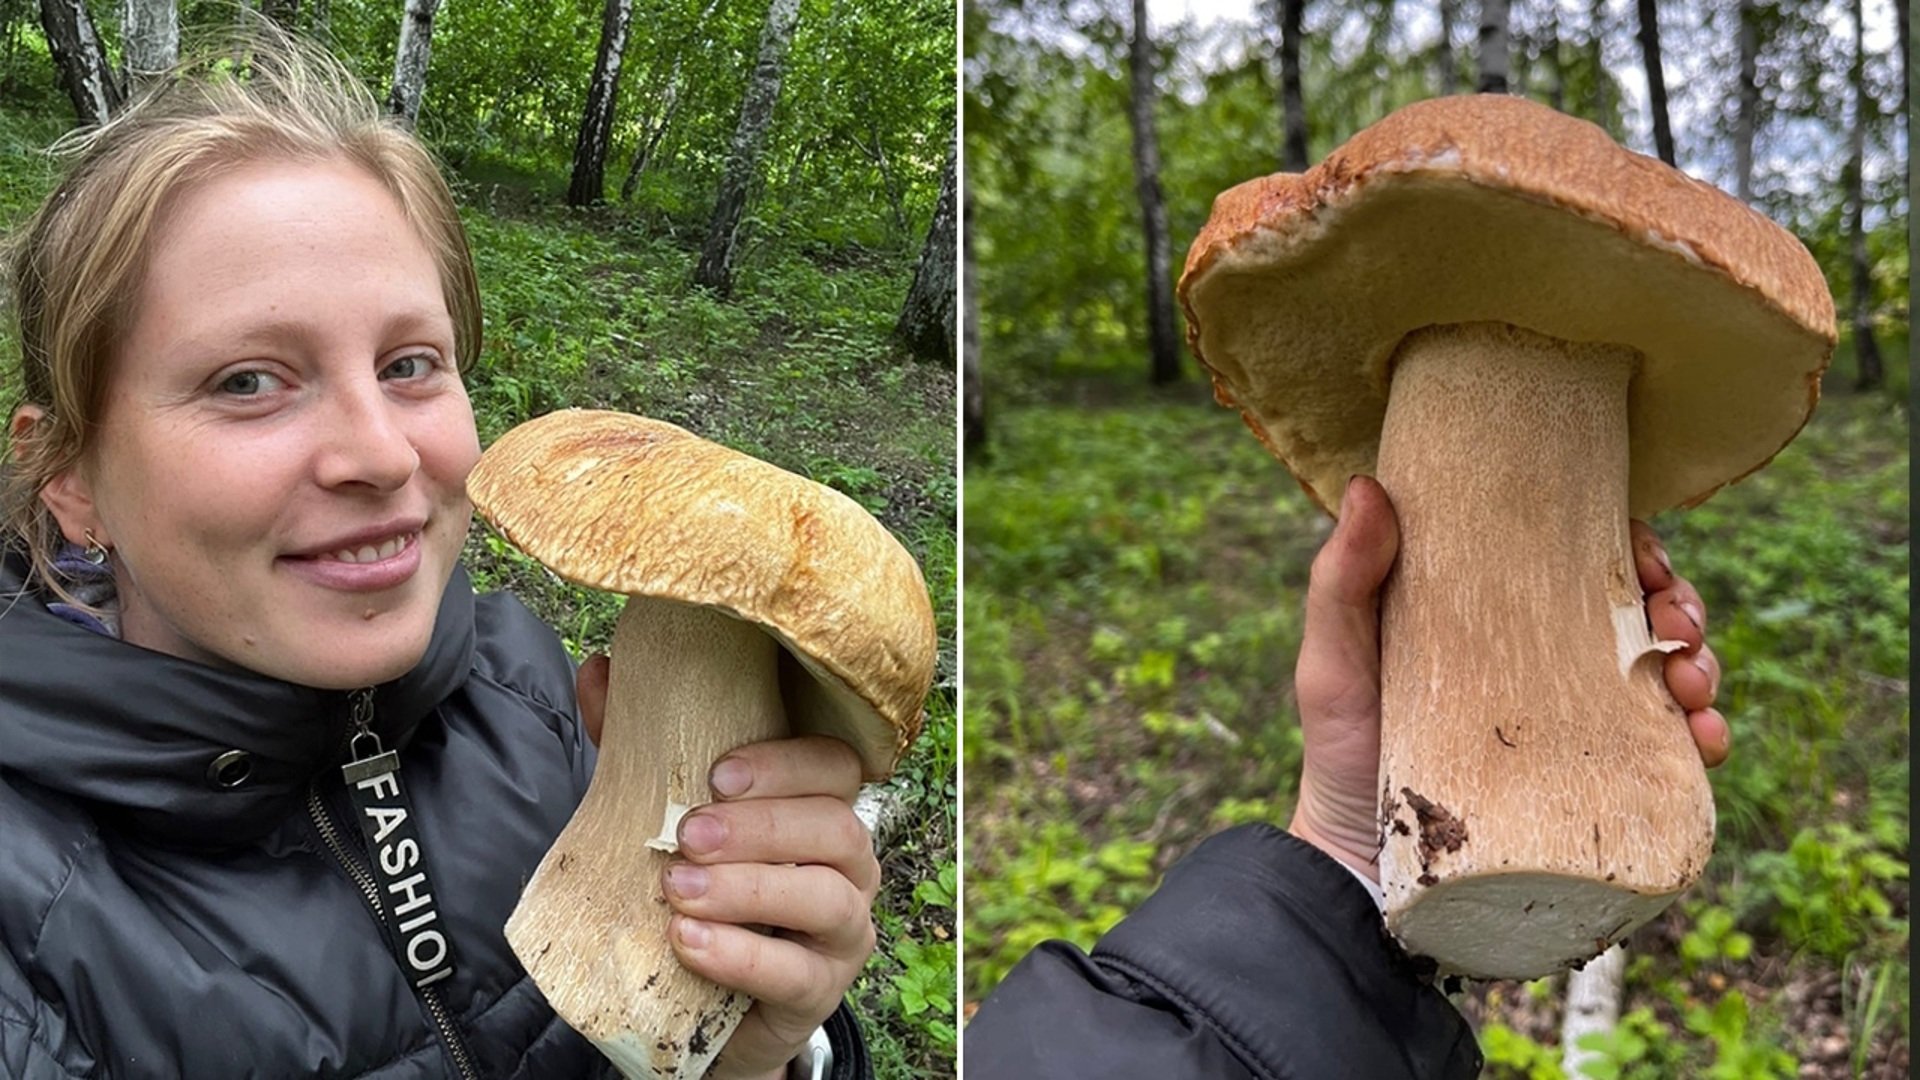 Белый гриб боровик – фото и описание, где растут, как выглядит, виды, польза и вред, условия выращивания — викигриб